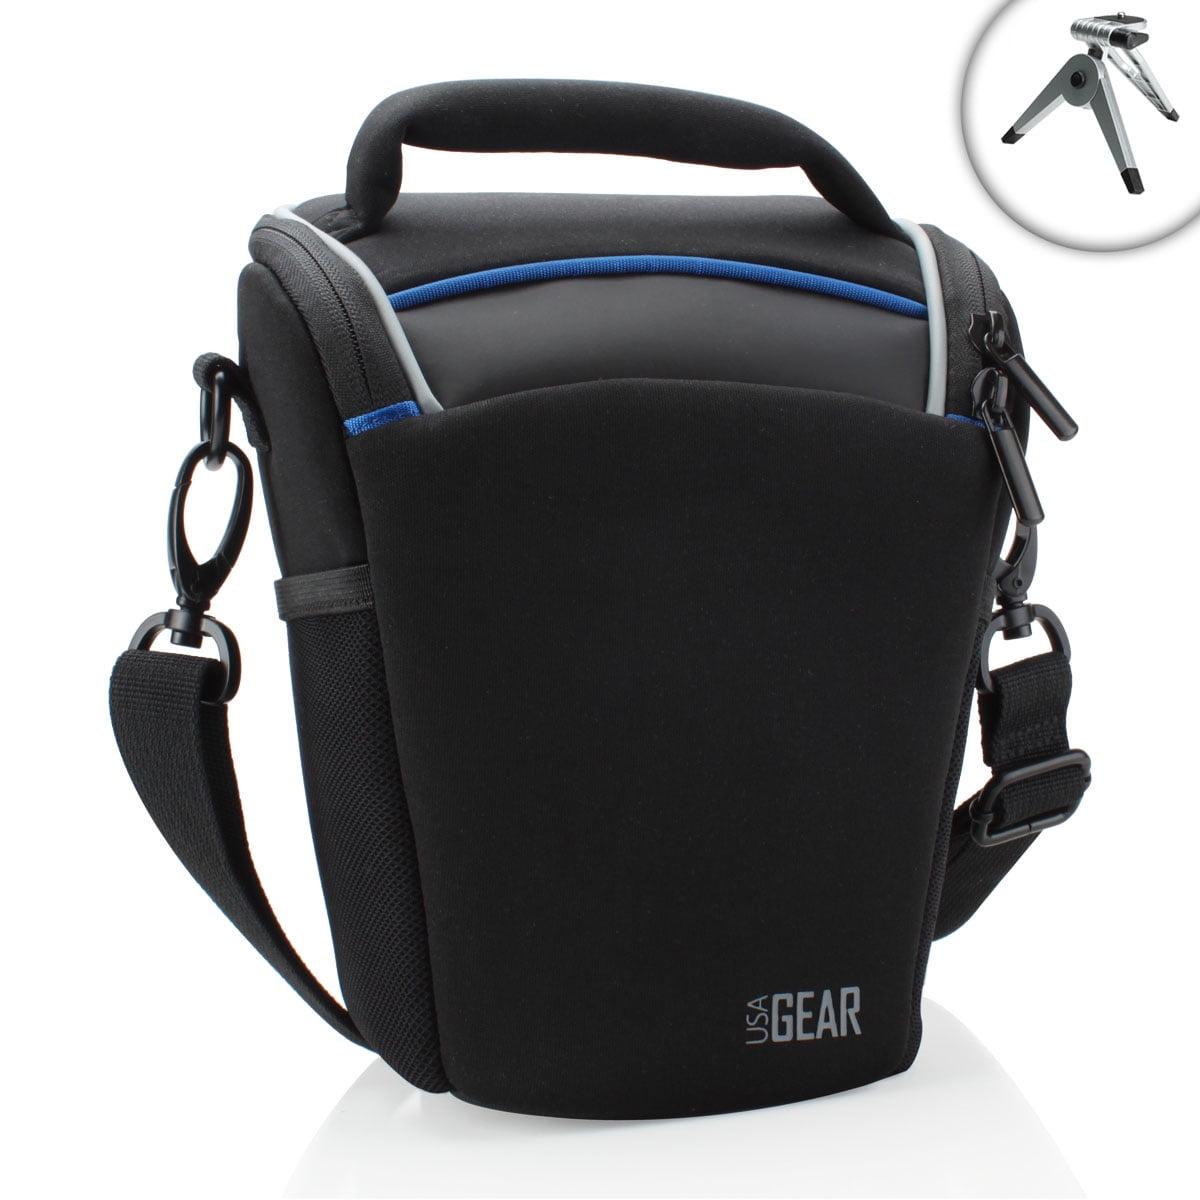 Digital SLR Camera Shoulder Carry Case Bag For Nikon D3500 D780 